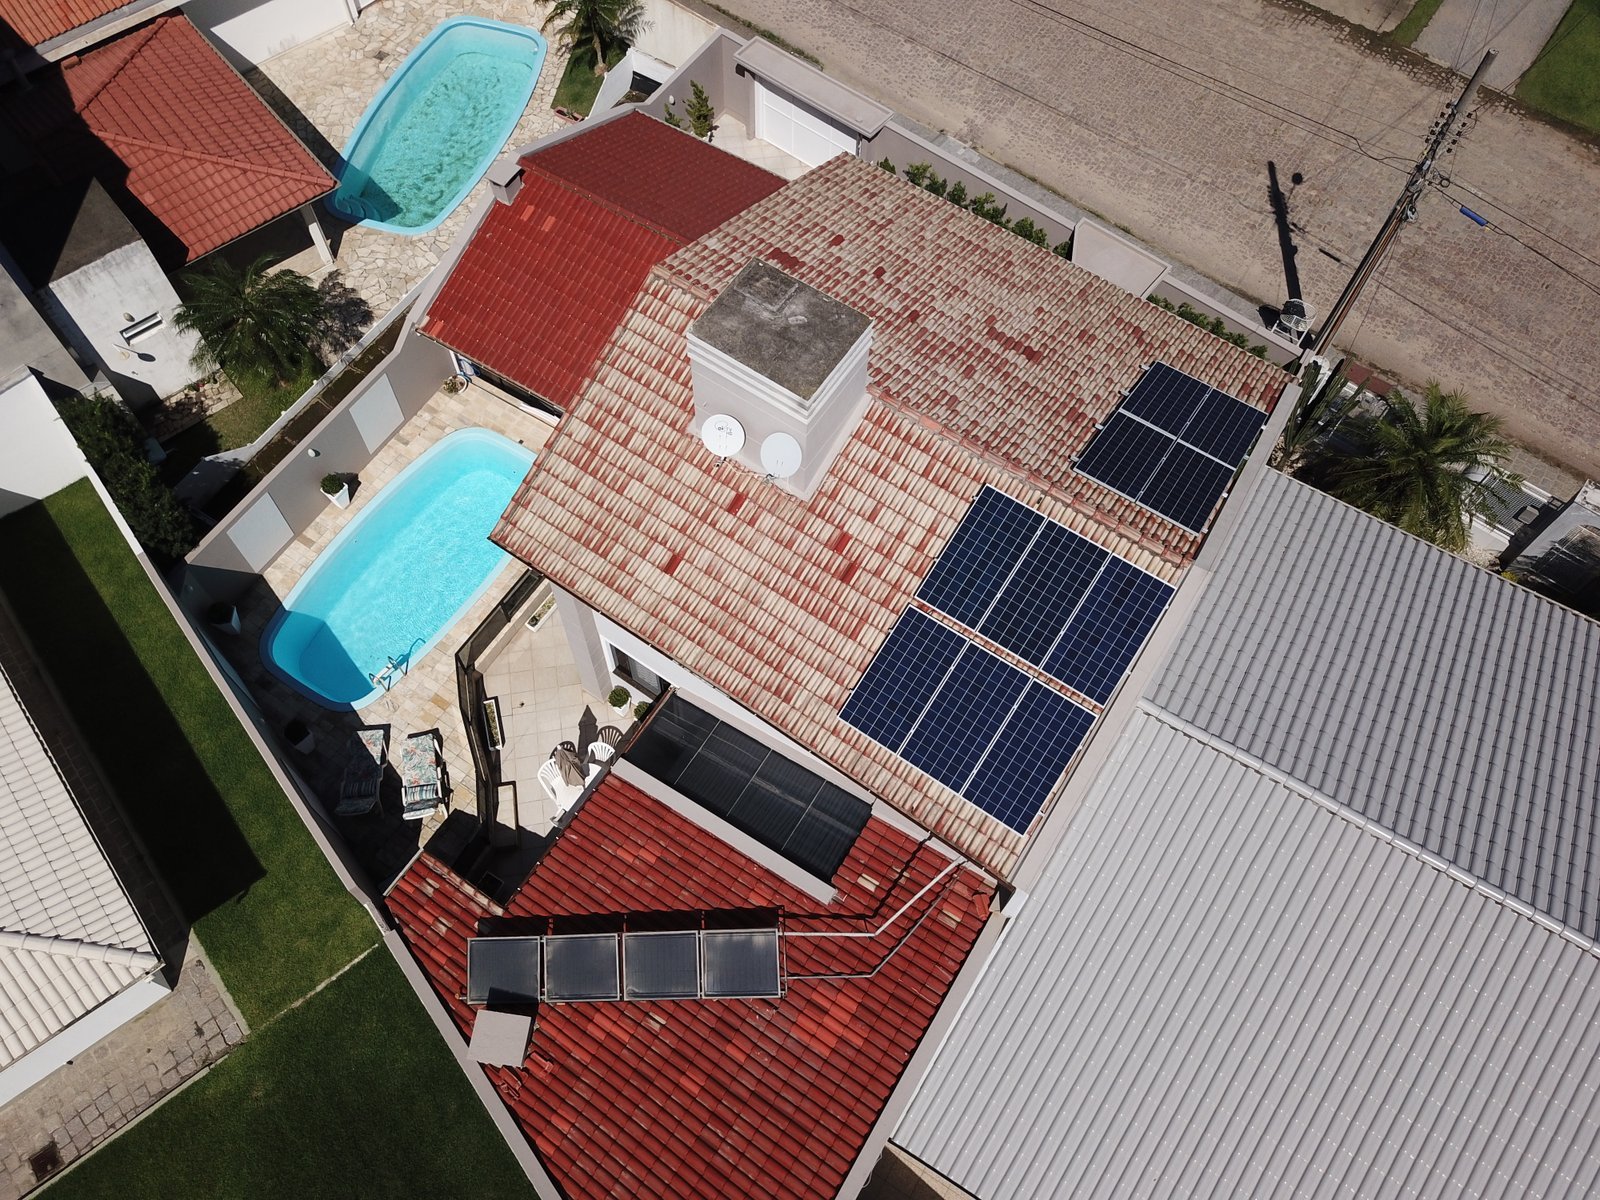 Casa com piscina e várias placas de energia solar instaladas nos telhados.